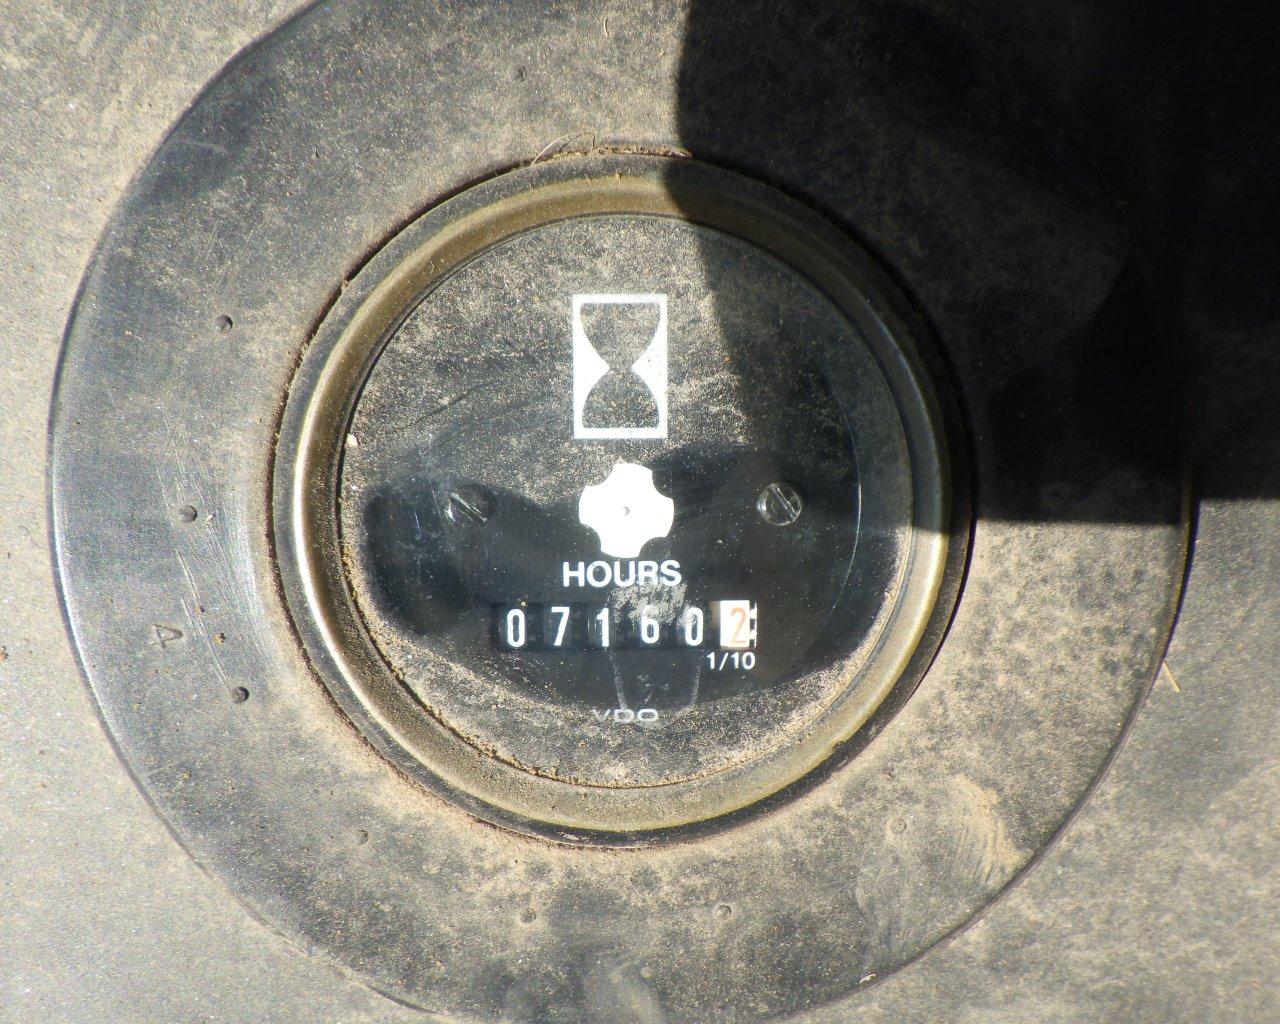 JOHN DEERE 310D Turbo Wheel Loader Backhoe   EROPS   Extendahoe   4x4 s/n:T